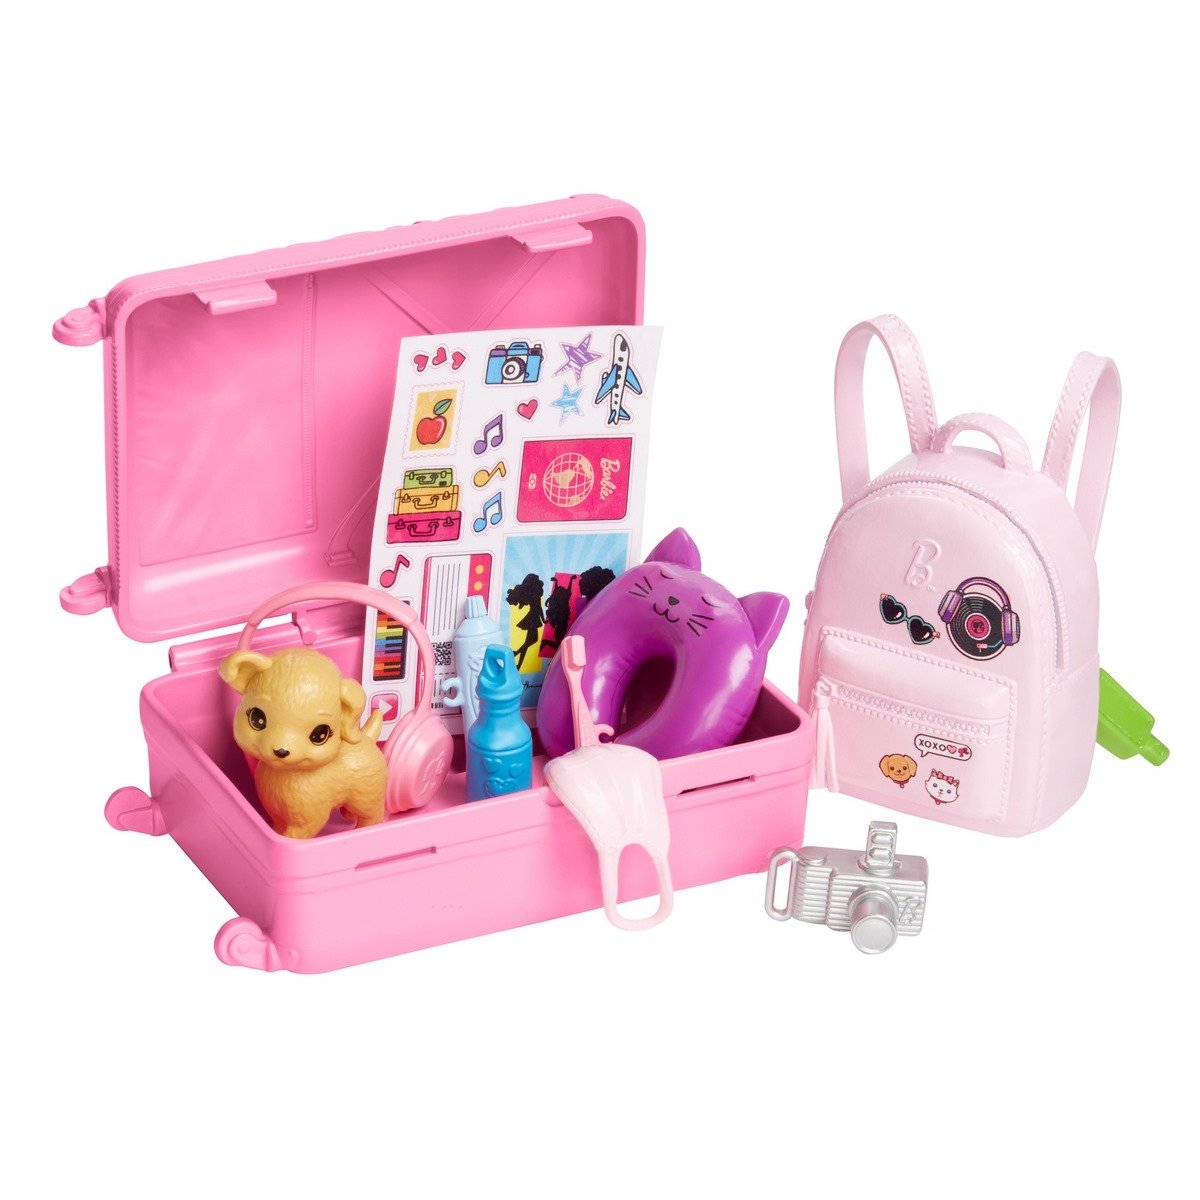 Valise jouet pour enfants, accessoires de poupées, voyage